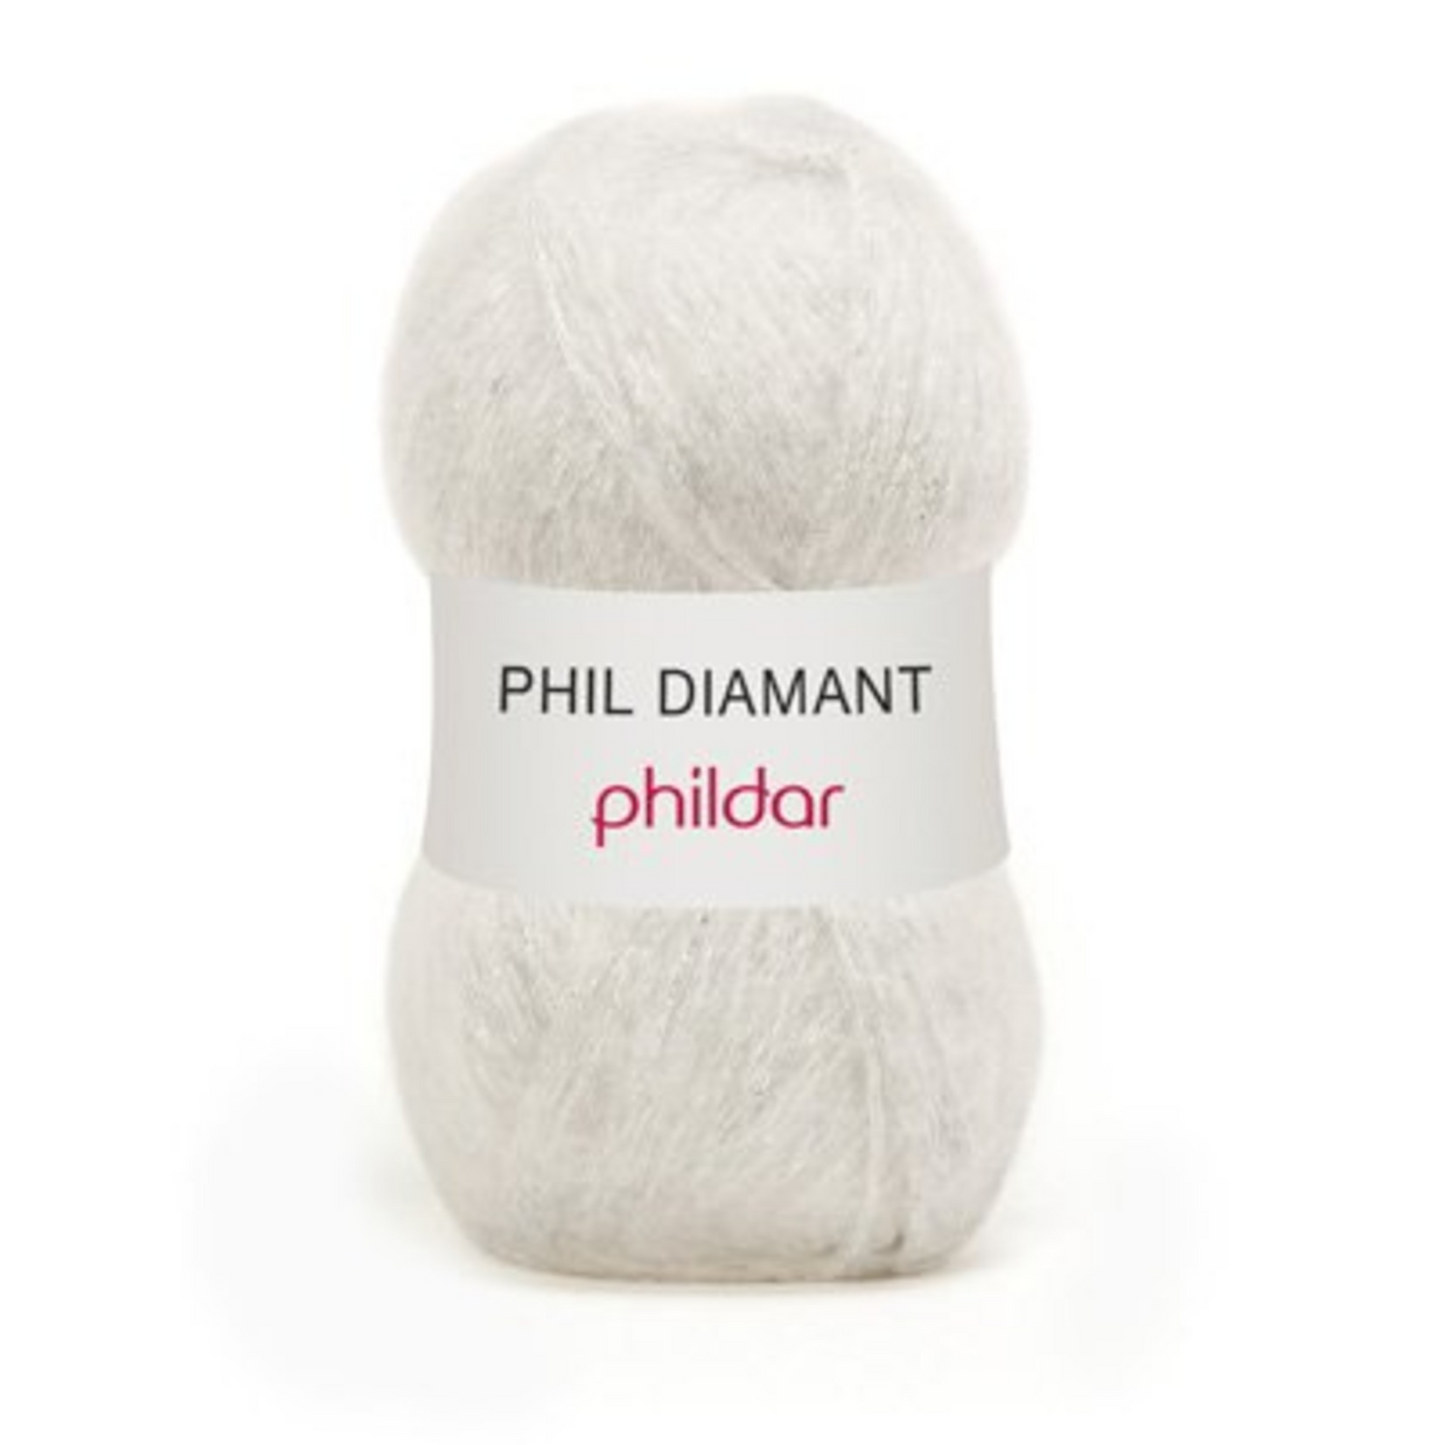 Phil diamant